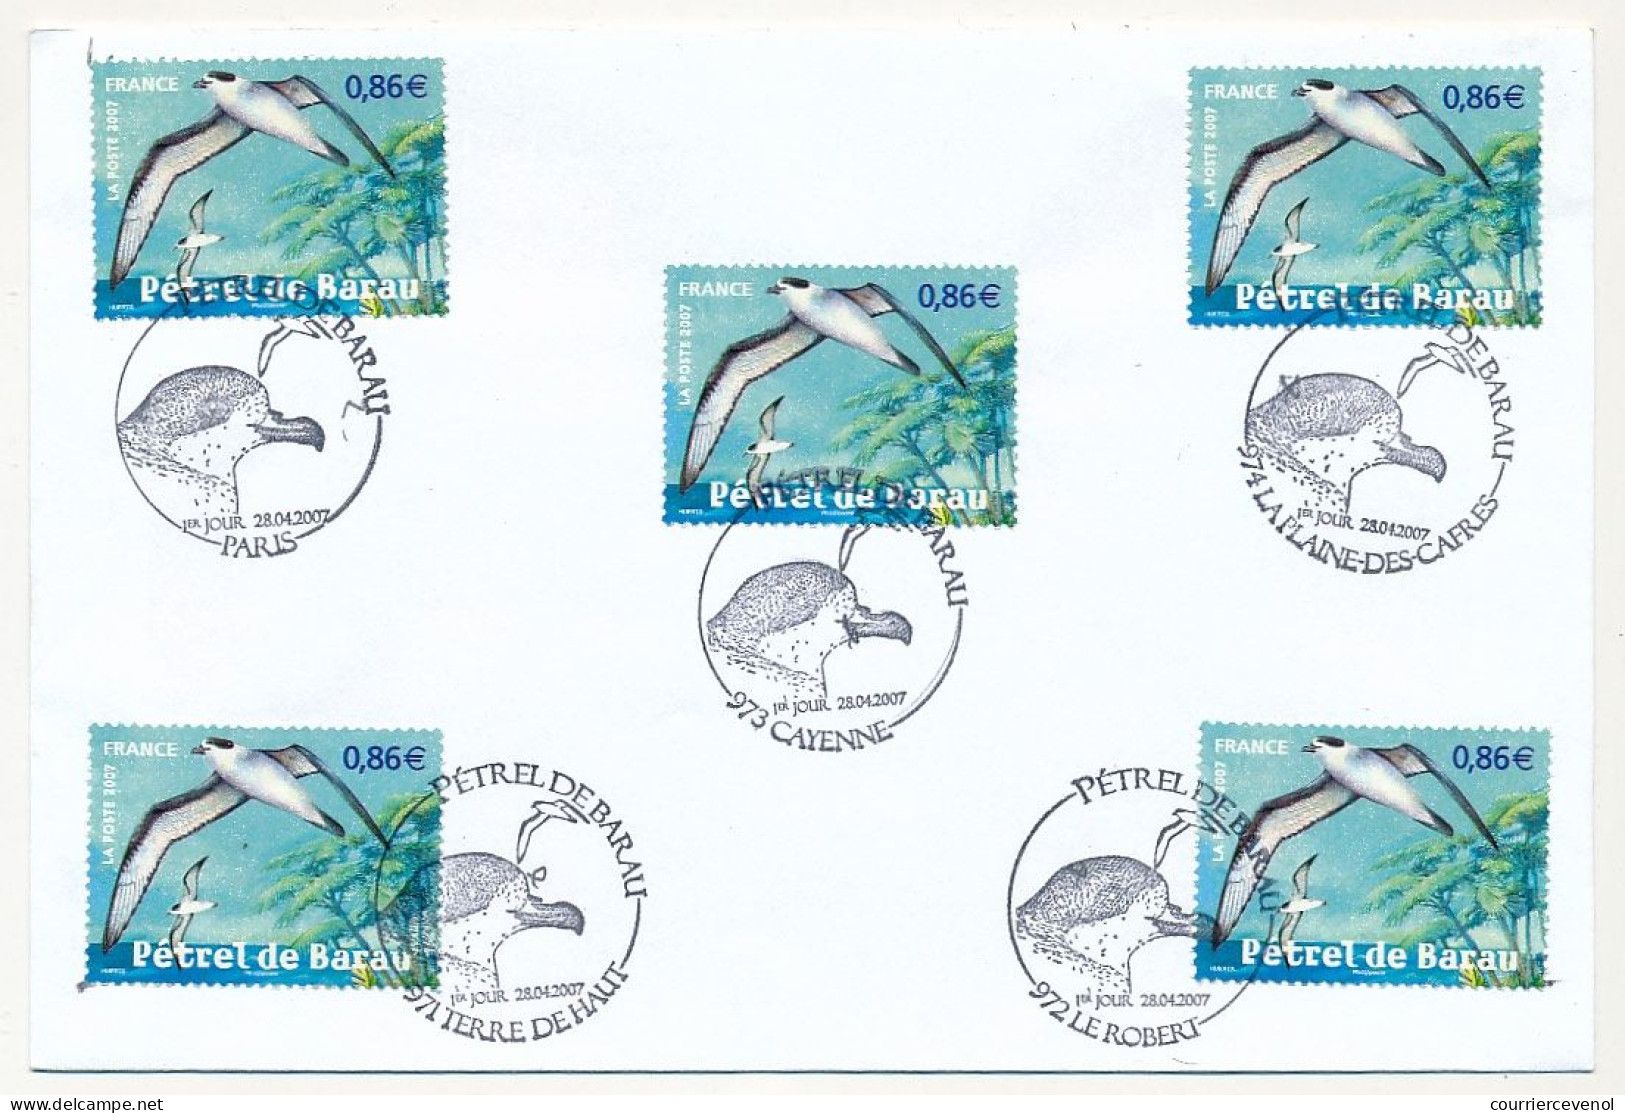 FRANCE - 10 enveloppes - Oiseaux d'outremer 2003 + Animaux 2007 - Cachets divers premier jour